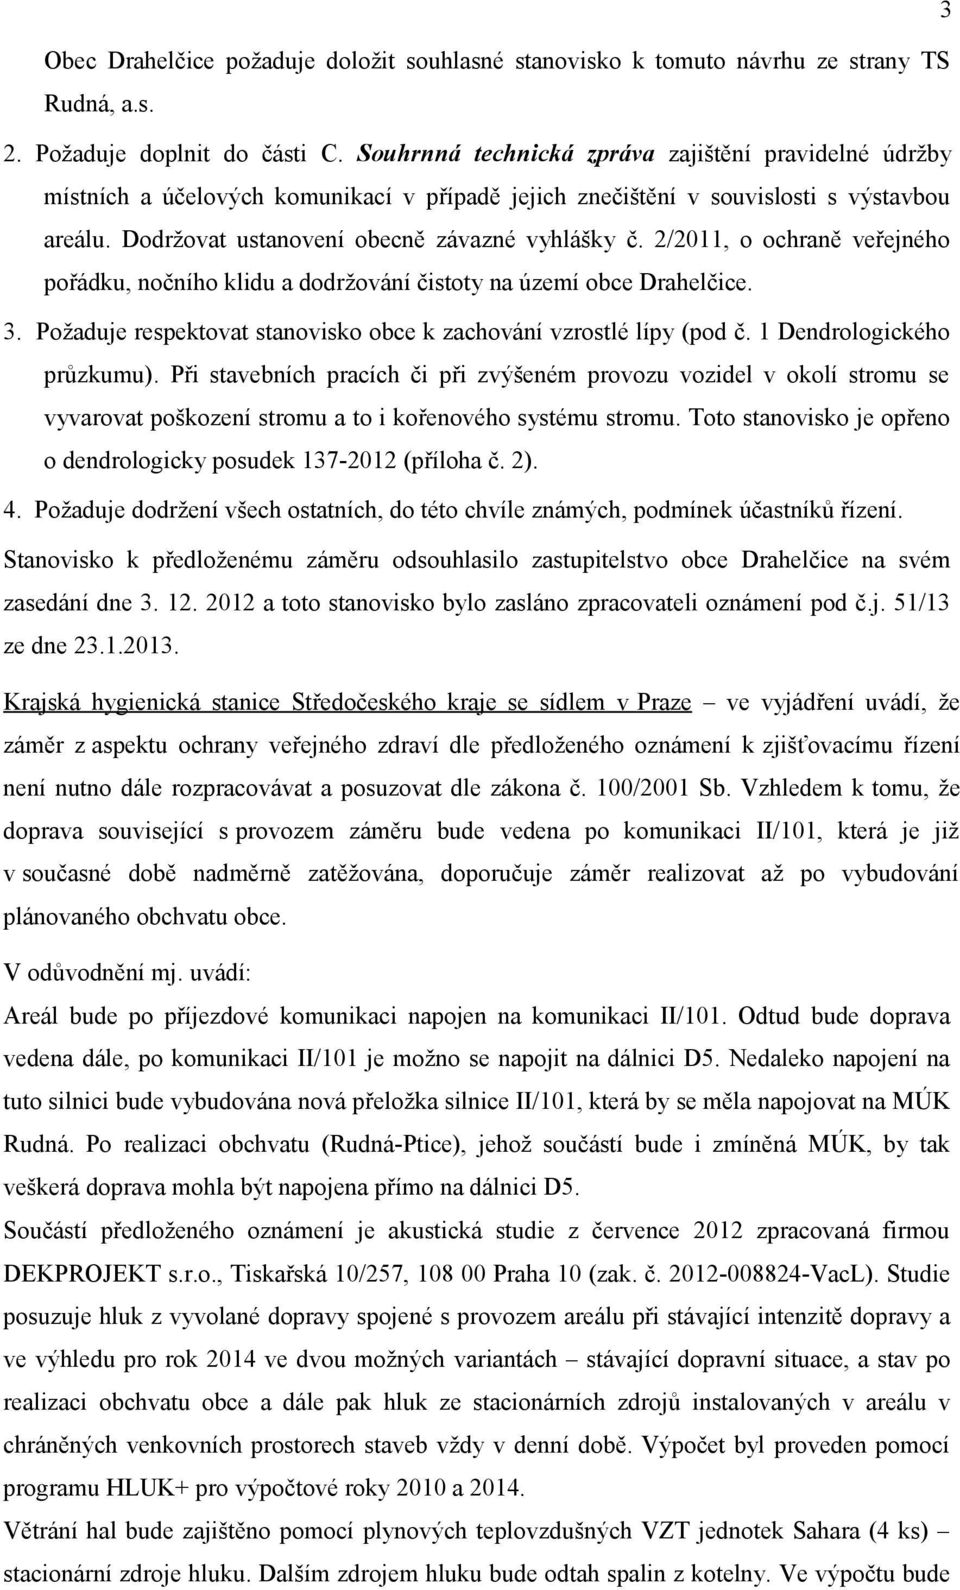 2/2011, o ochraně veřejného pořádku, nočního klidu a dodržování čistoty na území obce Drahelčice. 3. Požaduje respektovat stanovisko obce k zachování vzrostlé lípy (pod č. 1 Dendrologického průzkumu).